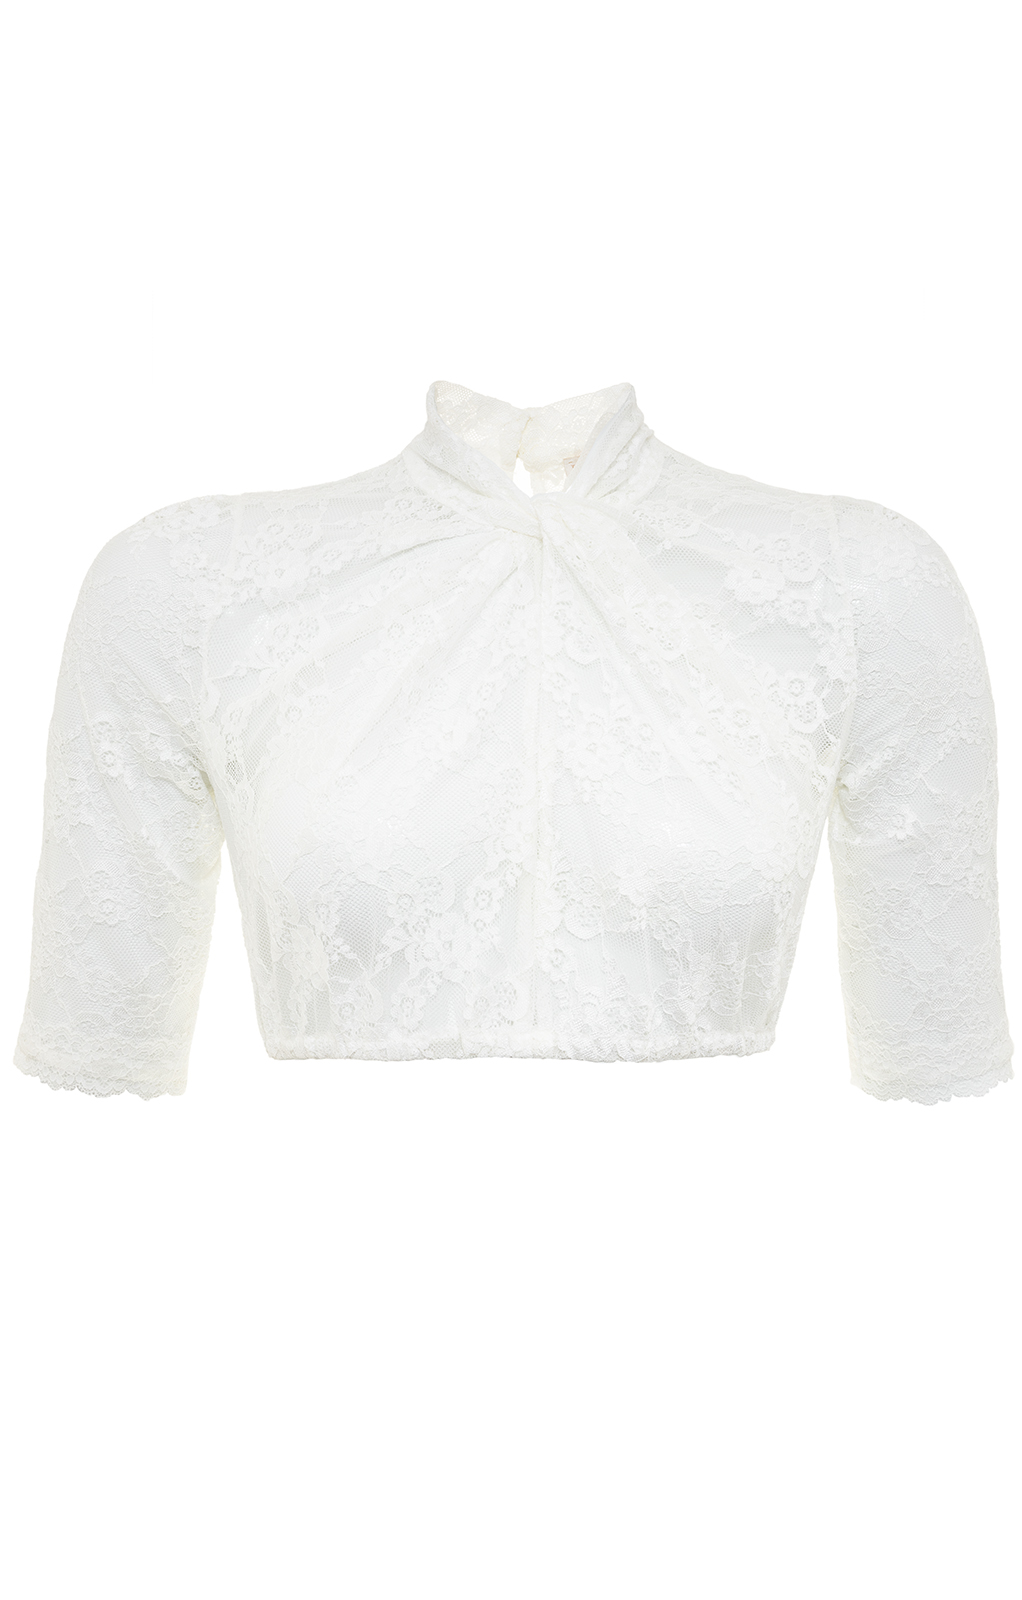 weitere Bilder von Traditional dirndl blouse KYRA ecru